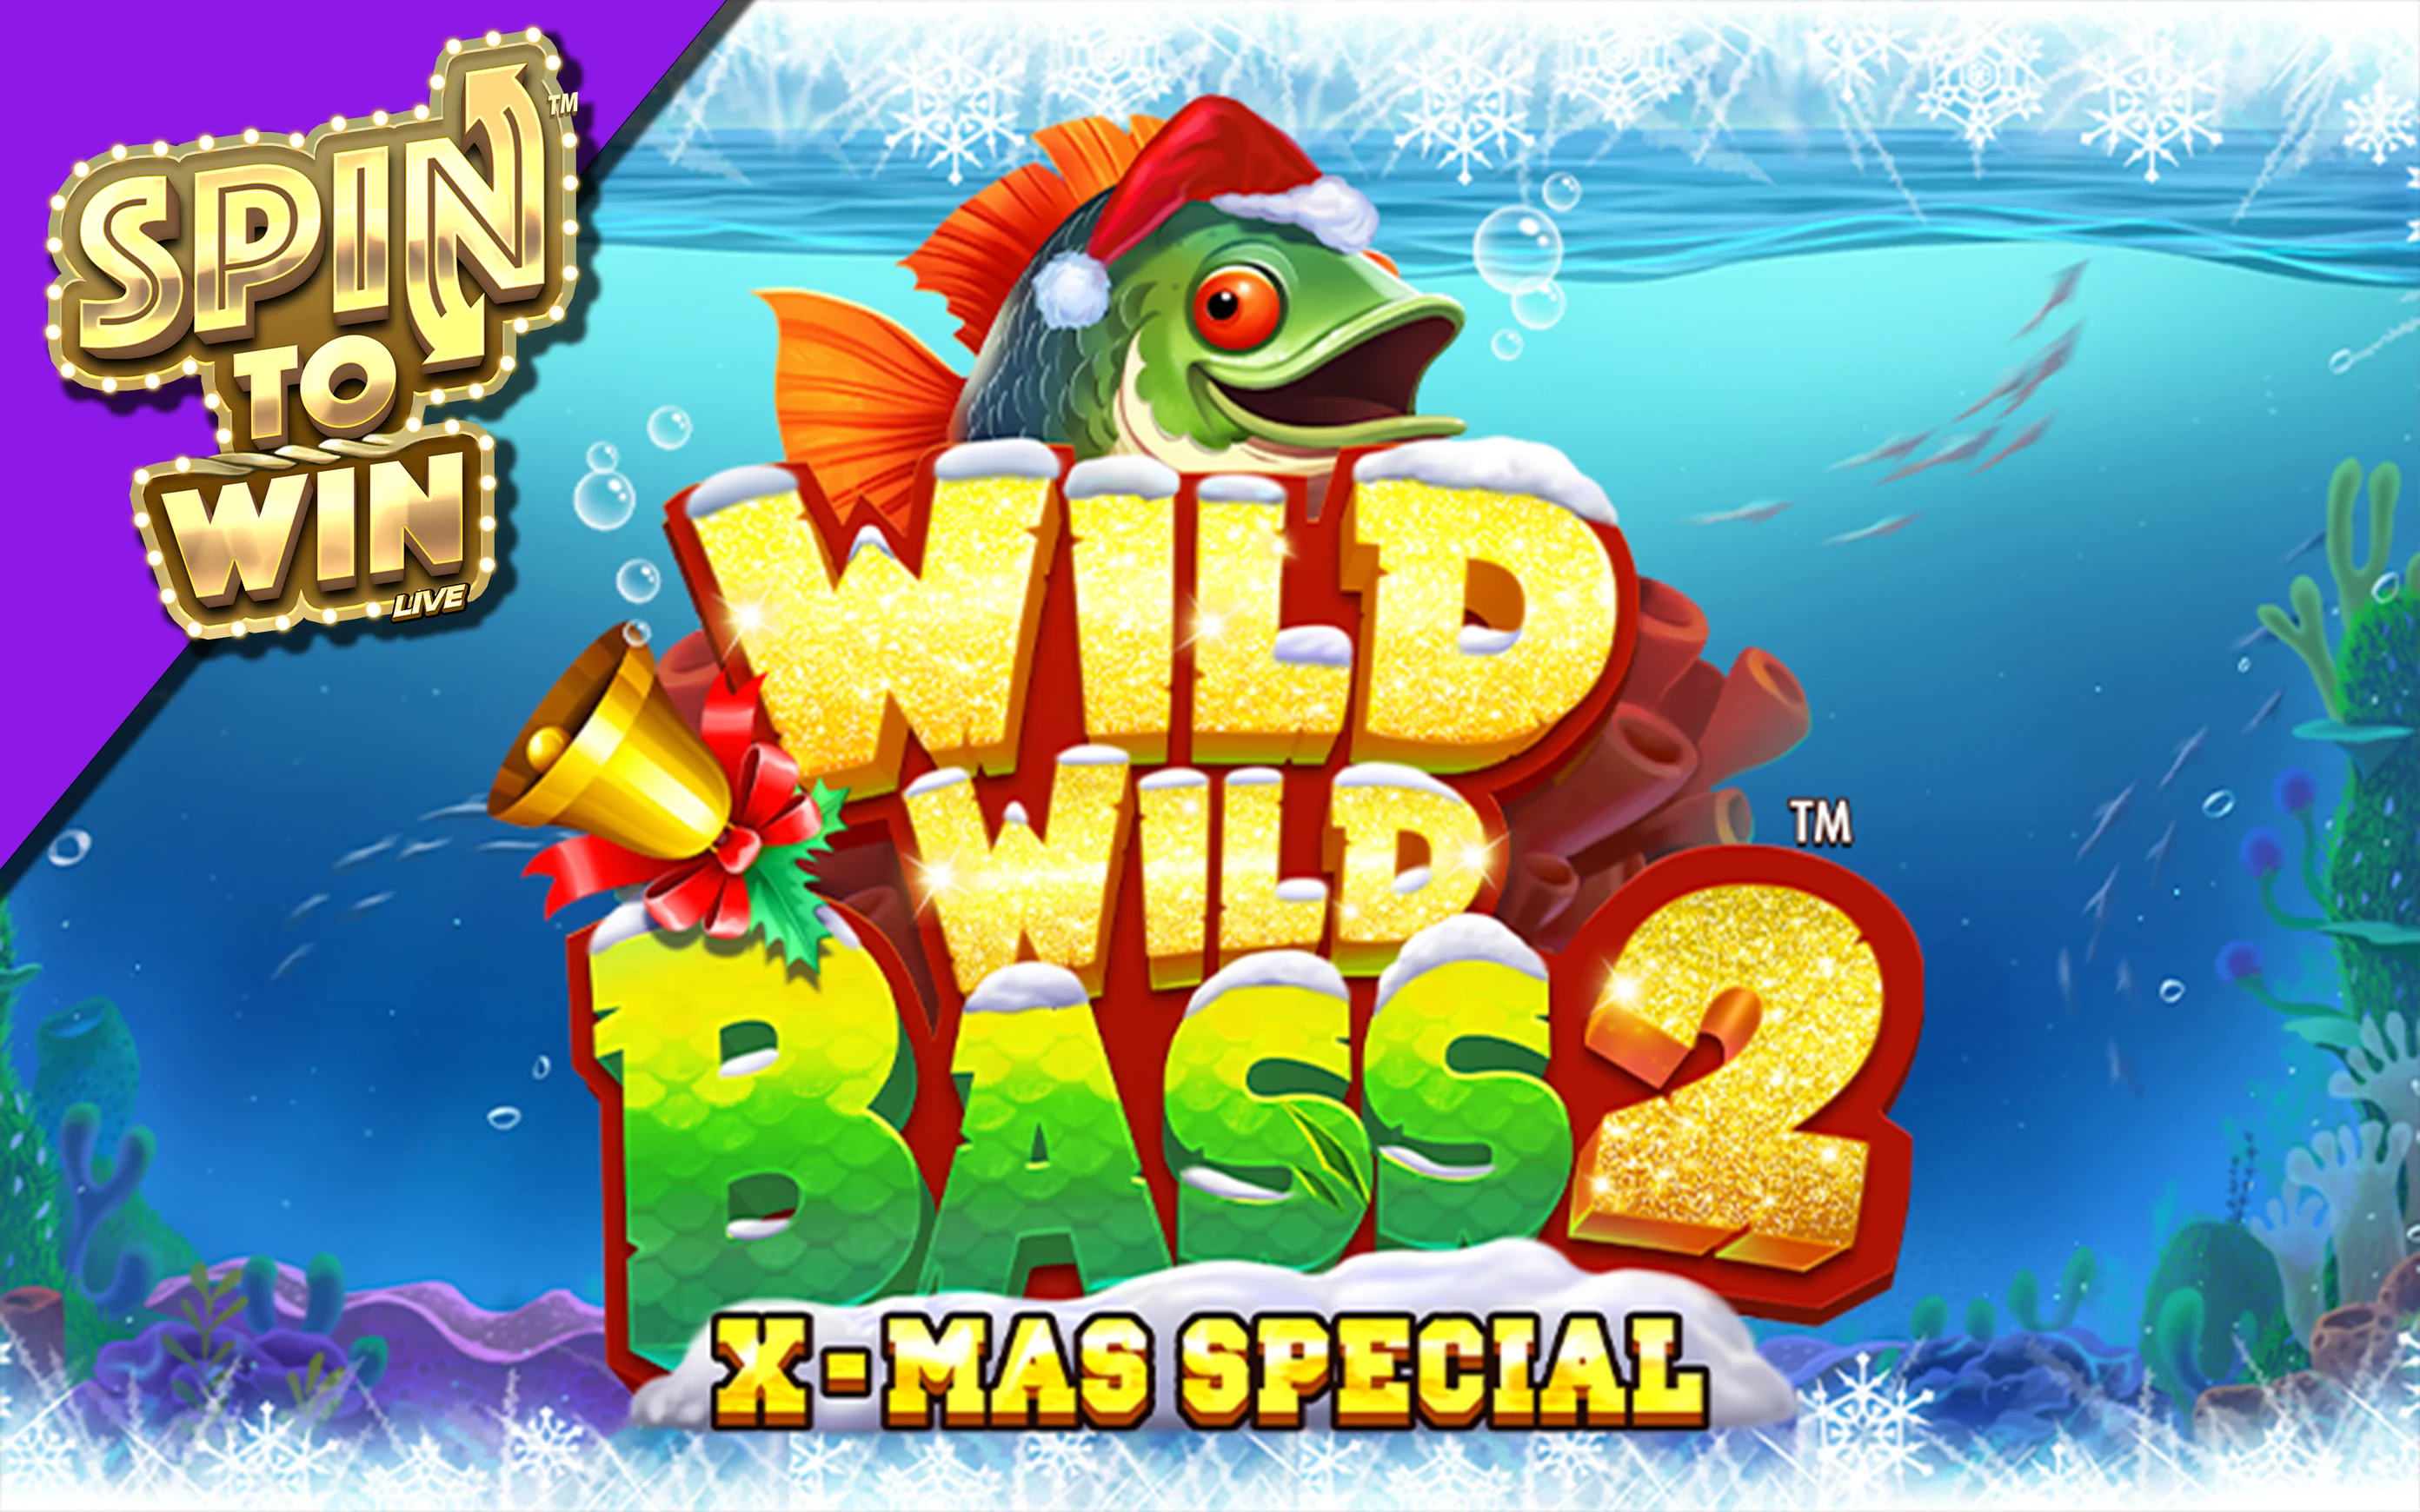 Spielen Sie Wild Wild Bass 2 Xmas Special™ auf Starcasino.be-Online-Casino